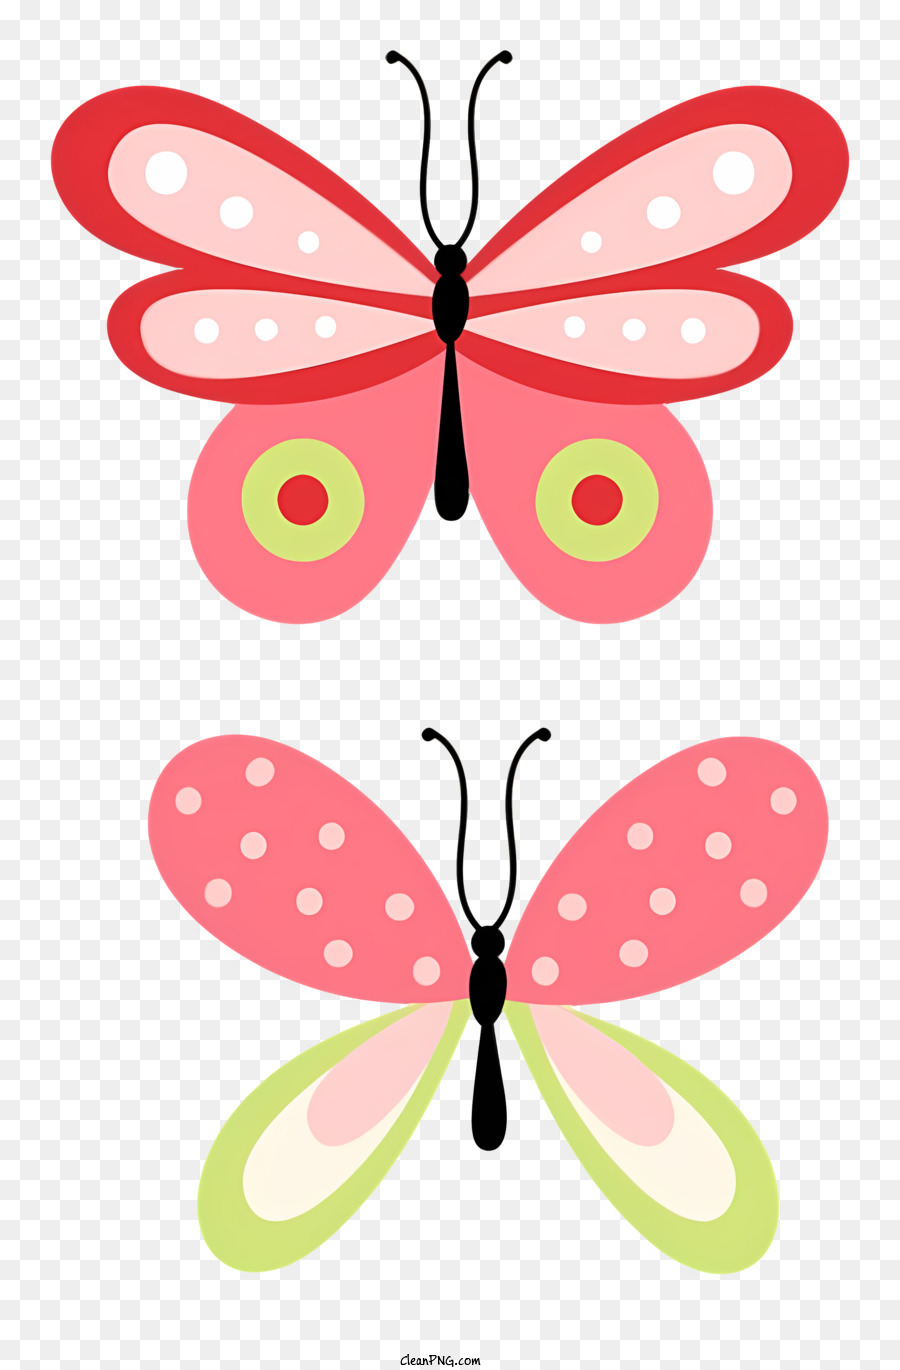 Schmetterlinge rosa und grüne Flügel Nahaufnahme durchscheinende Materialien glänzender Finish - Nahaufnahme von zwei glänzenden, durchscheinenden Schmetterlingen